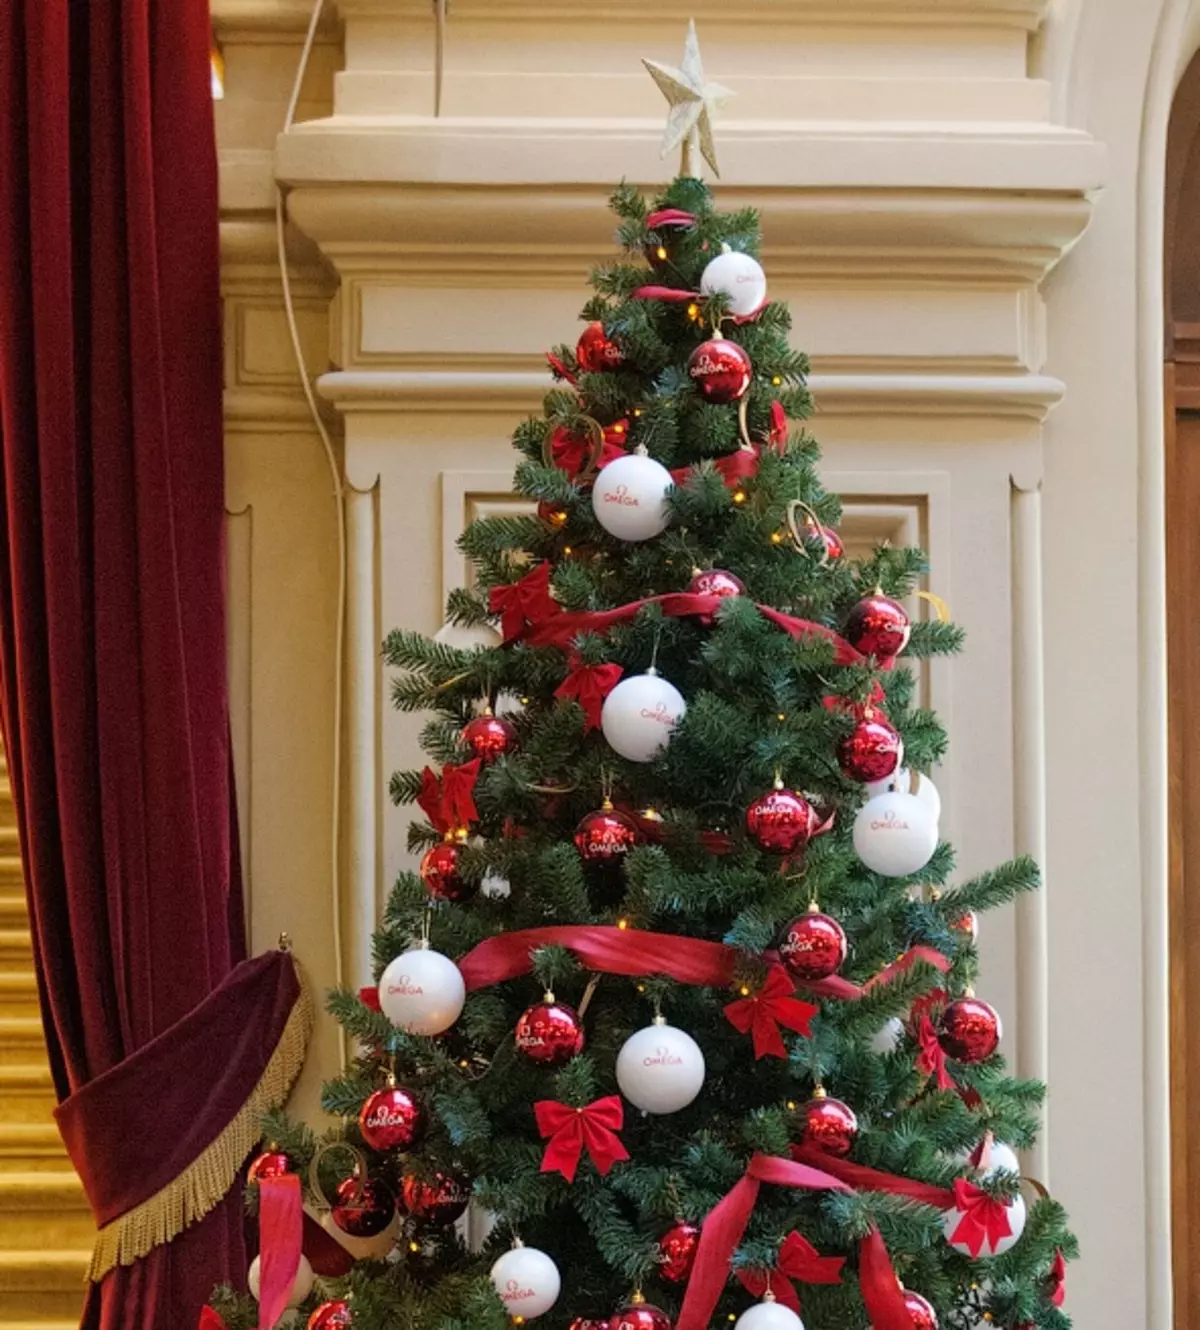 Ziemassvētku eglīšu apdare ar lokiem (35 fotogrāfijas): loki ar bumbiņām un ziediem, ar lentēm un pērlēm, skaisti rotā Ziemassvētku eglīti ar sarkaniem un baltām lokiem 7640_10